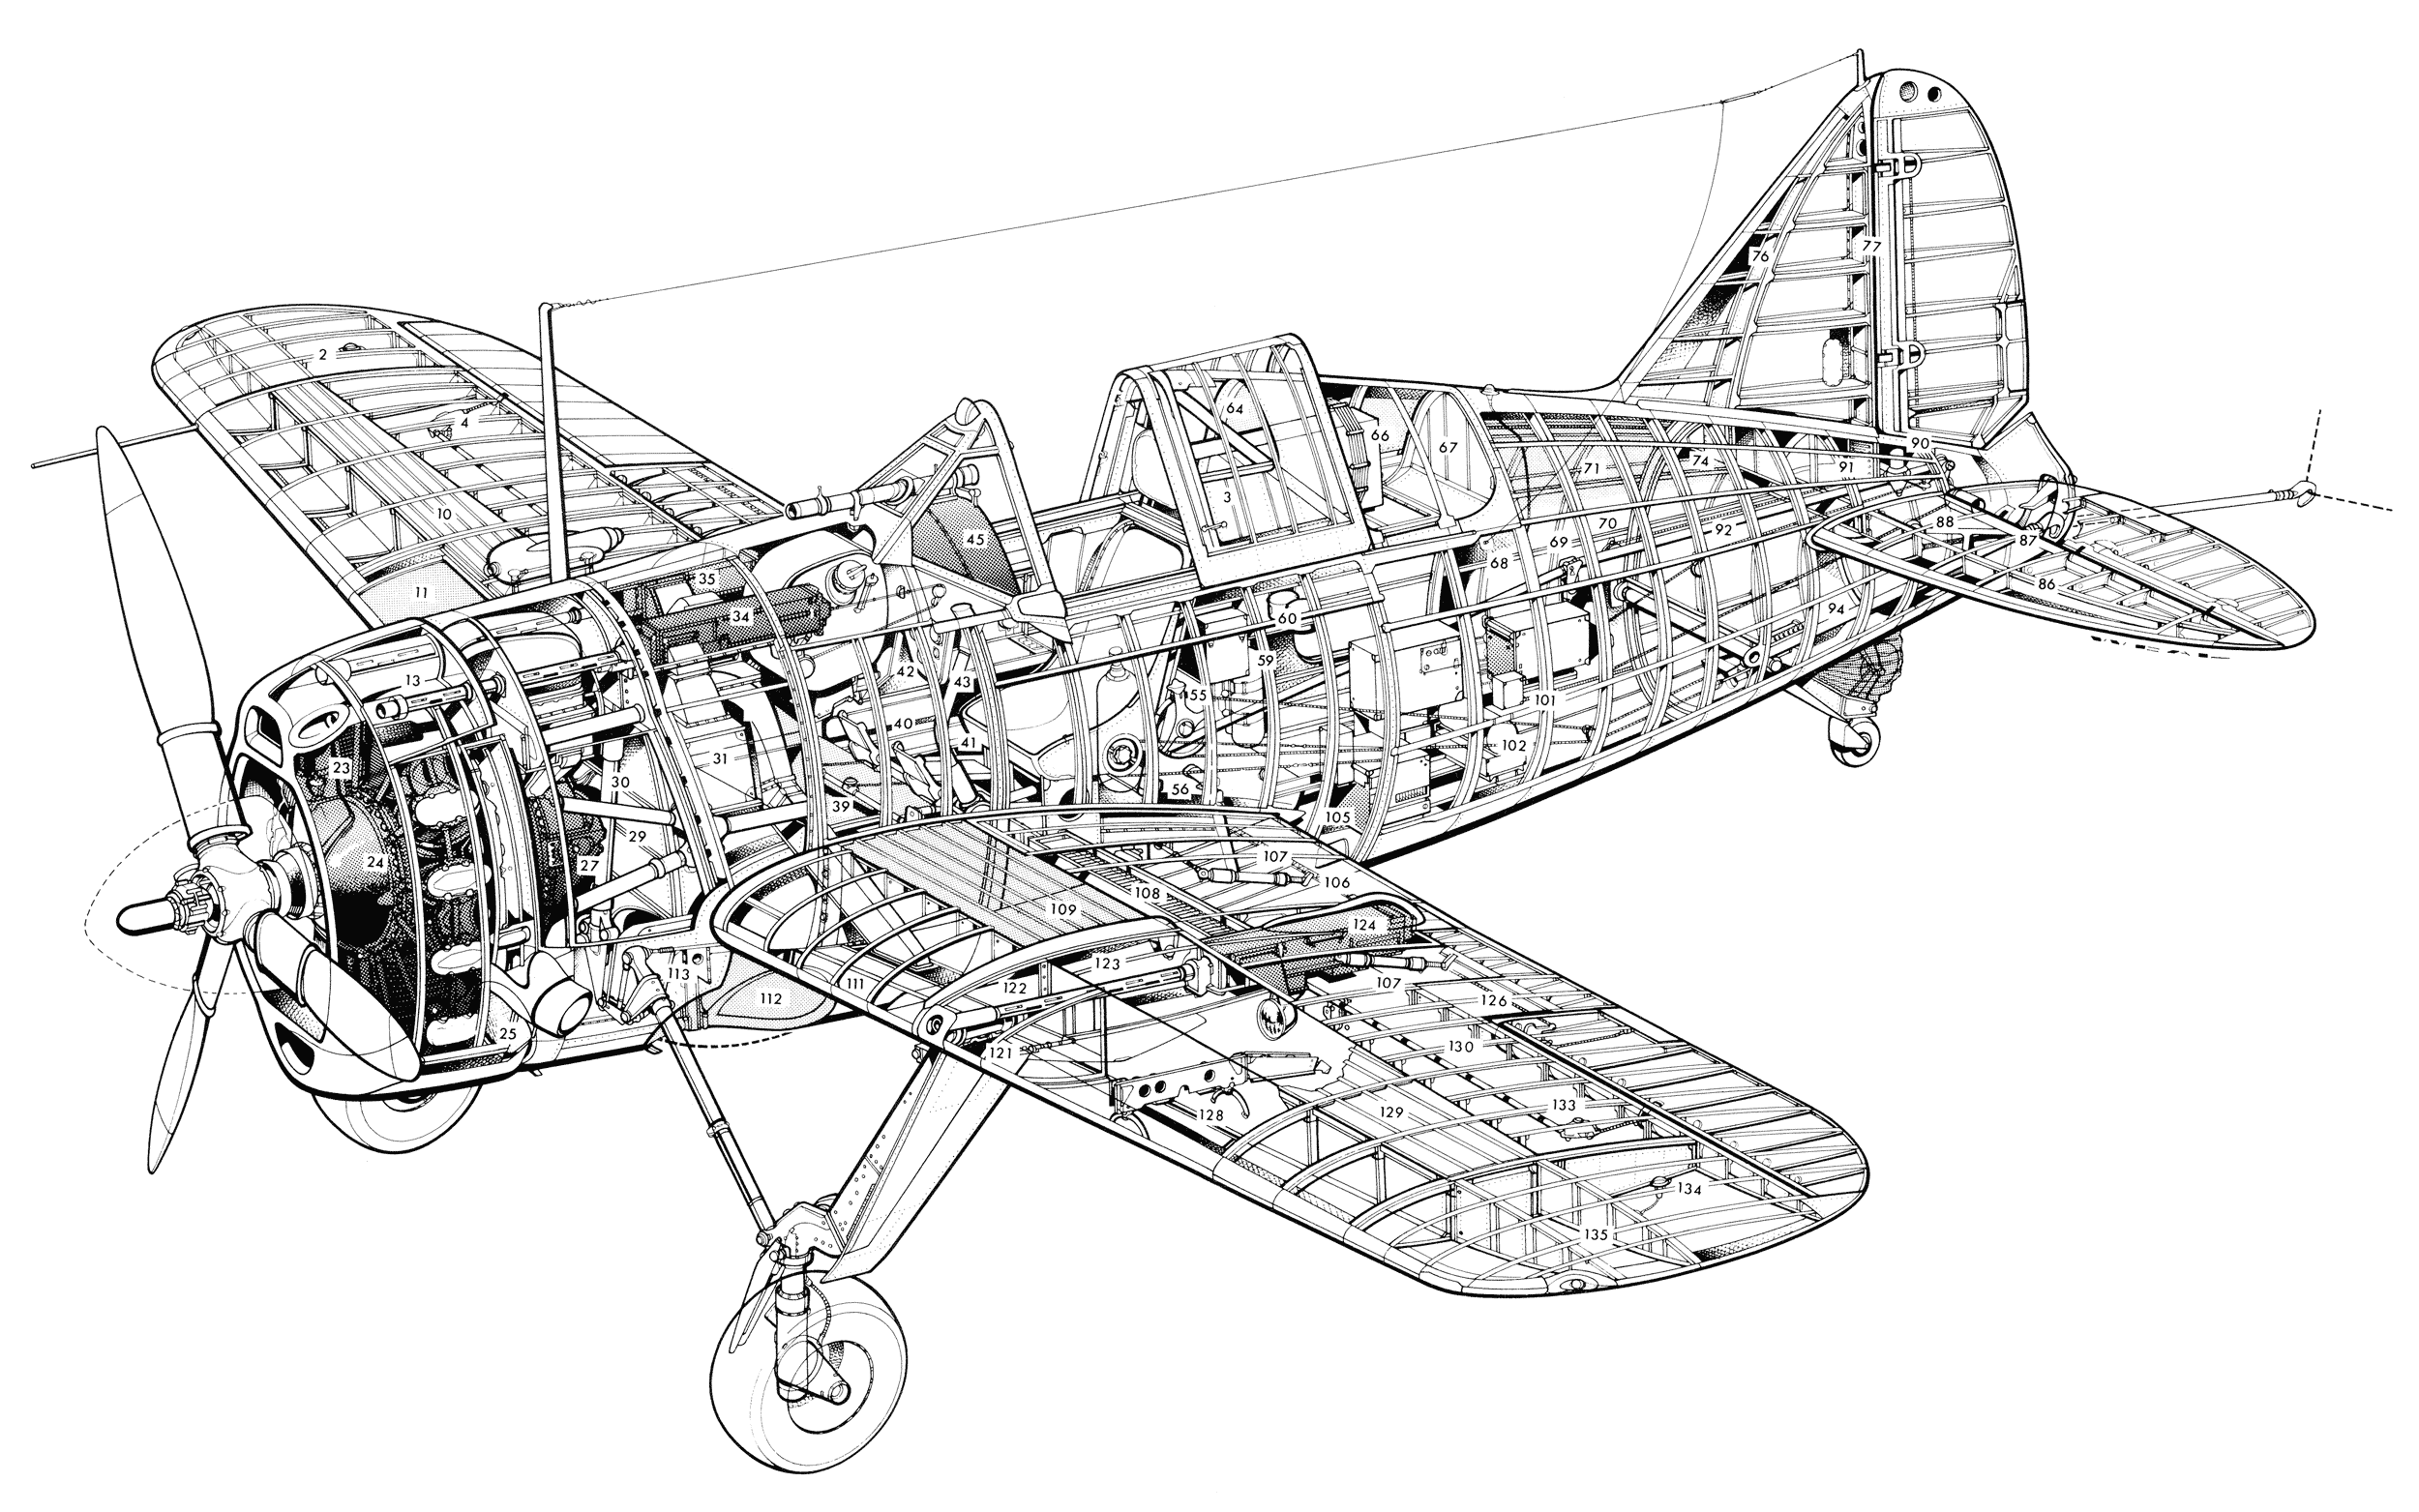 Brewster F2A Buffalo cutaway